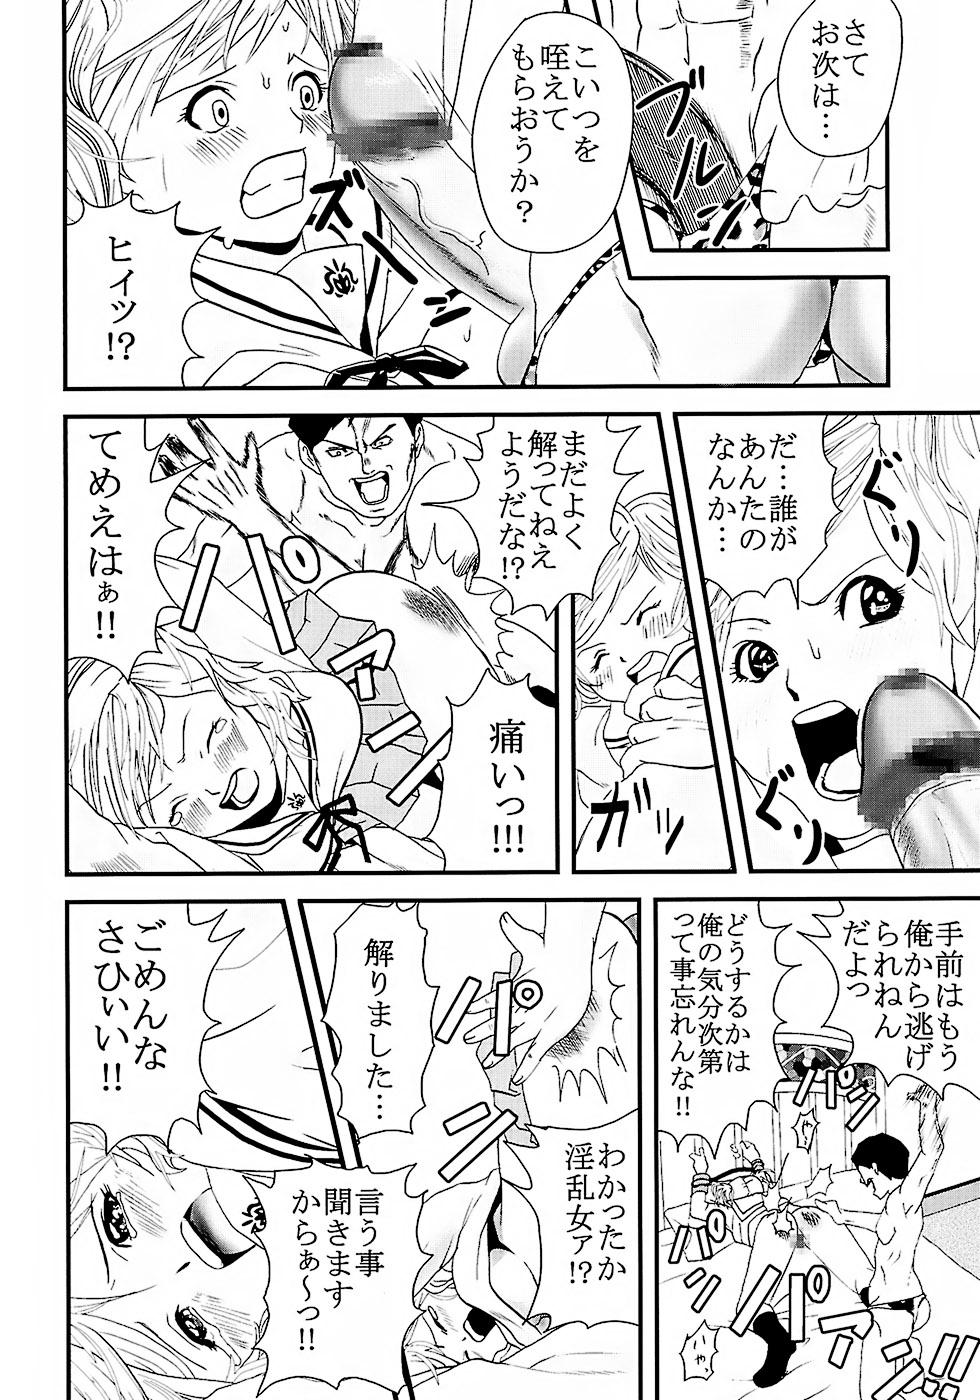 Pau Chitsui Gentei Nakadashi Limited vol.2 - Hatsukoi limited Cut - Page 7